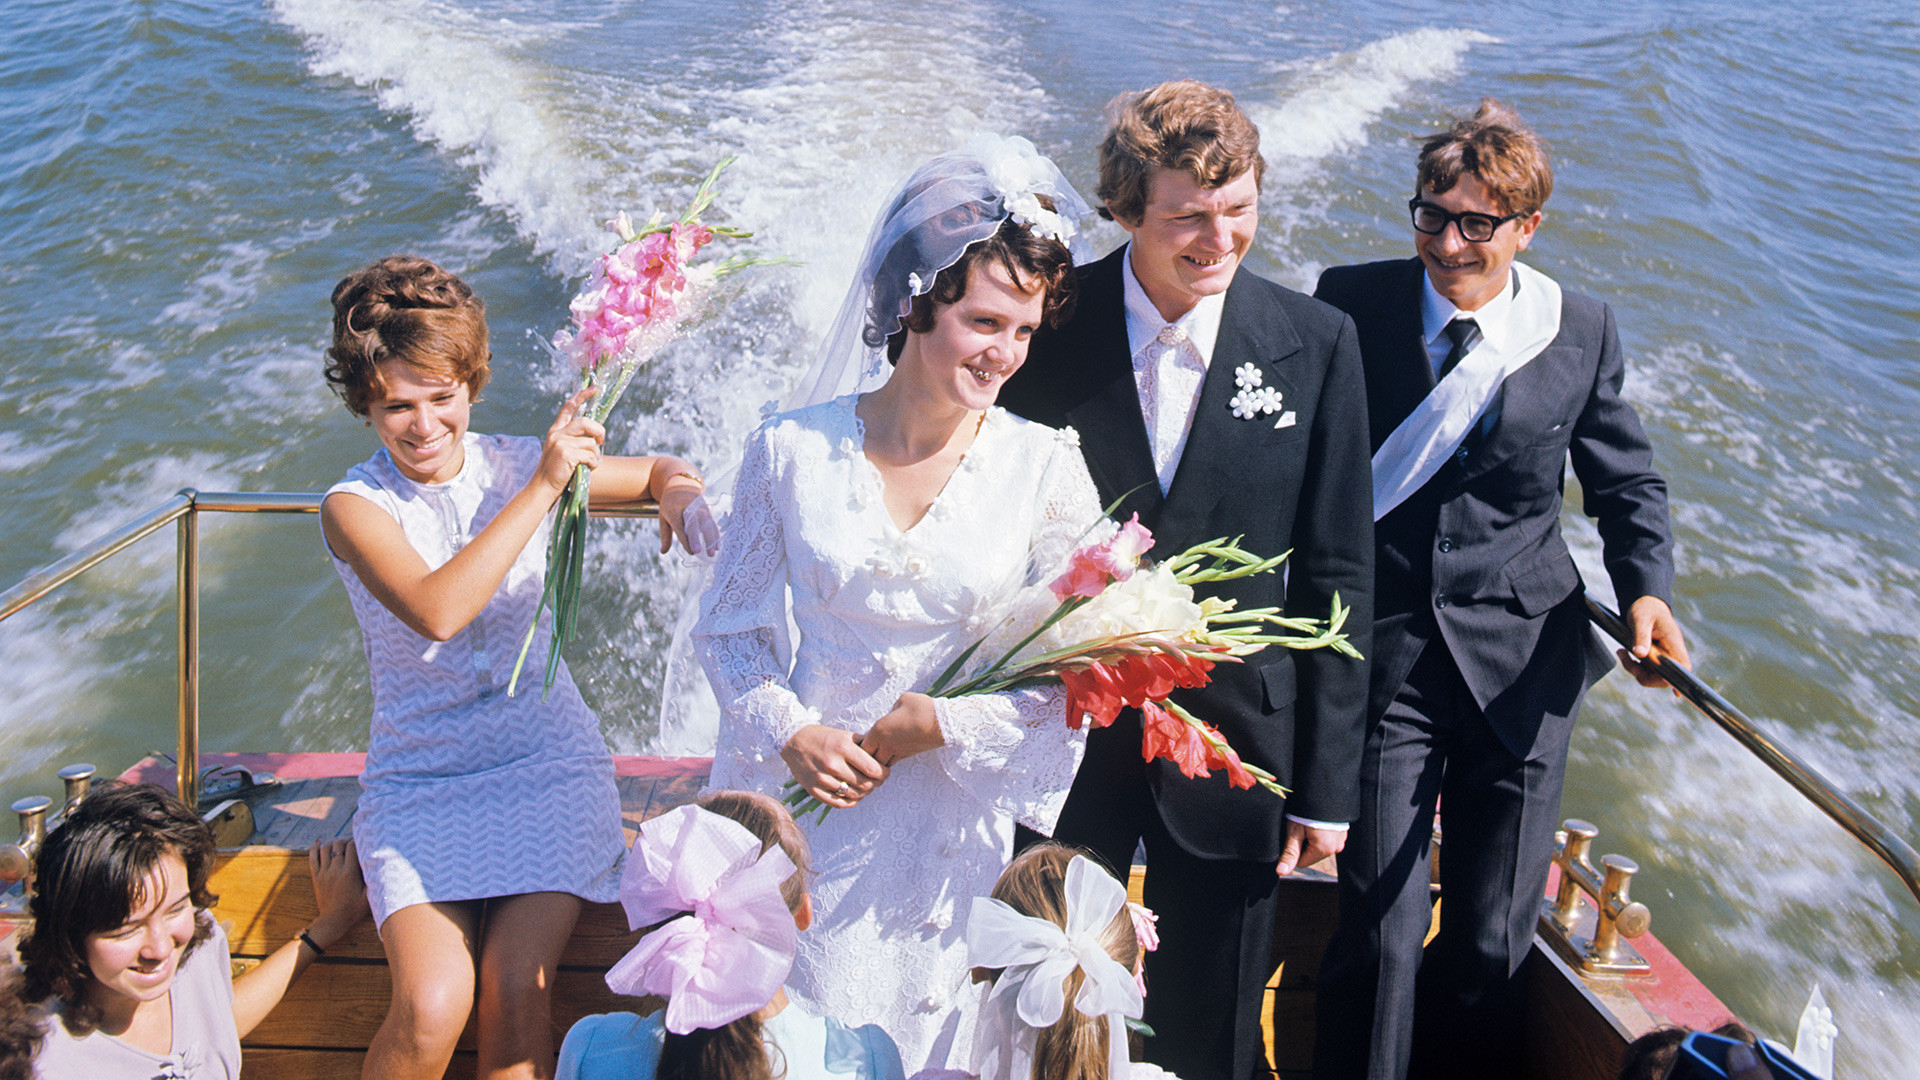 ソ連時代の結婚式とはどのようなものだったのか 写真特集 ロシア ビヨンド